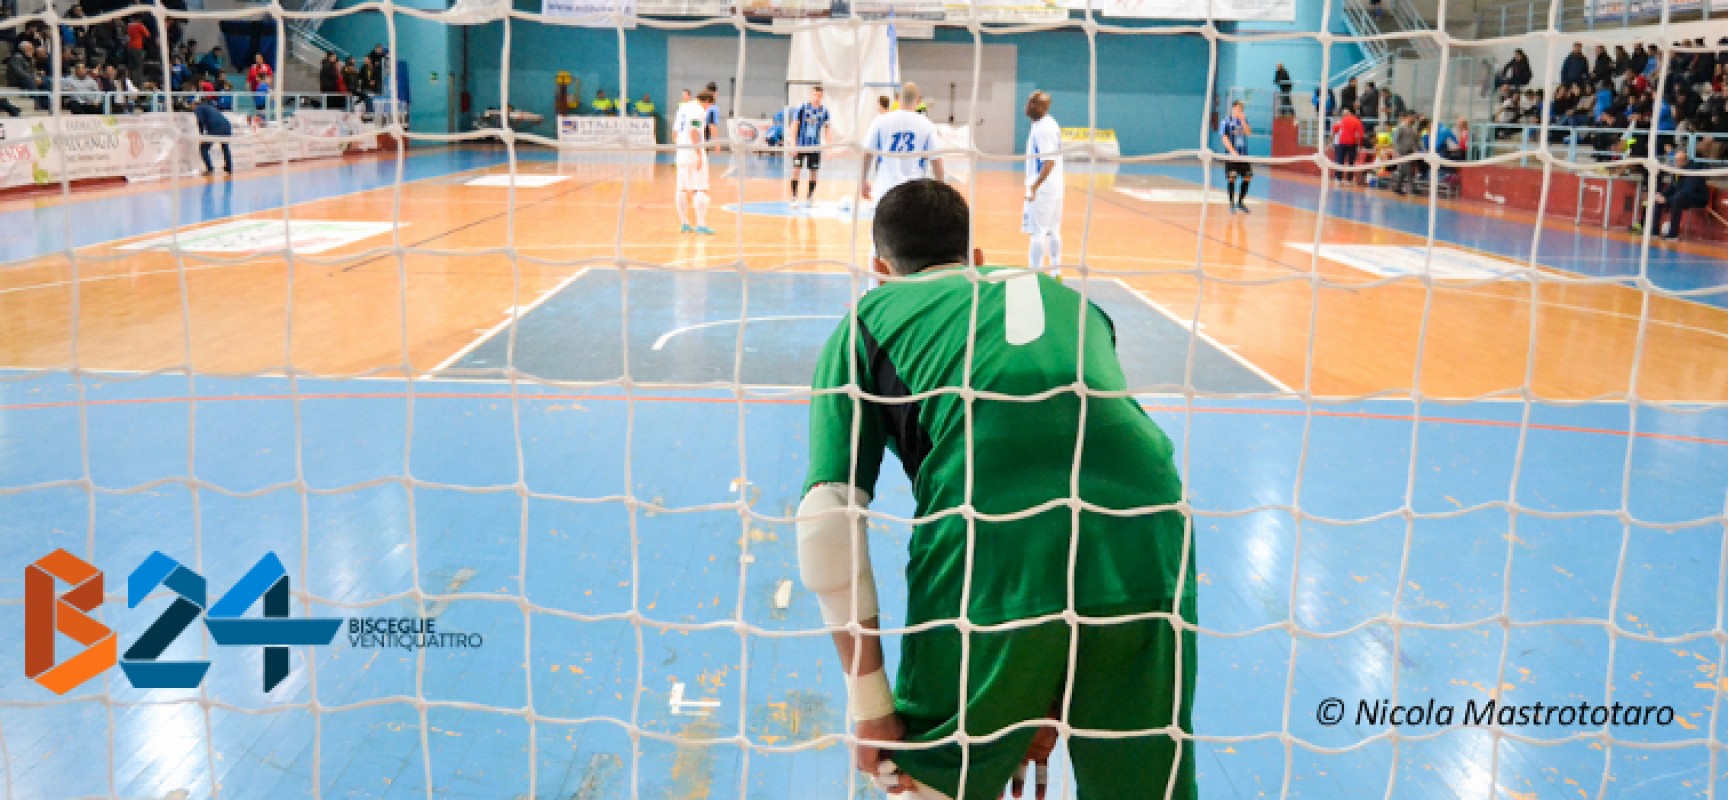 Stasera Futsal Bisceglie-Diaz, test amichevole per ritrovare la condizione